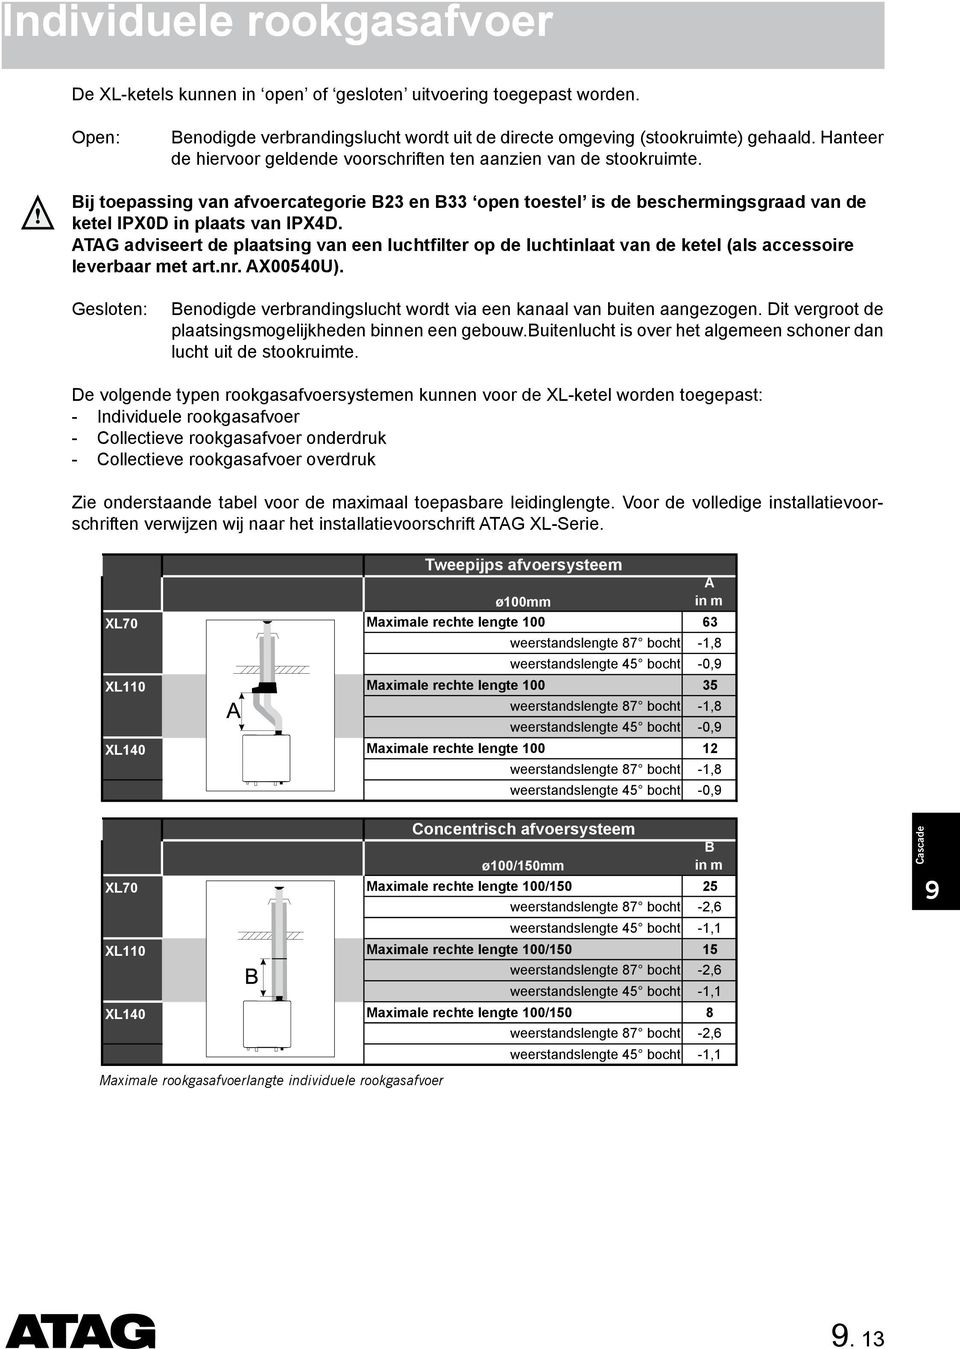 ATAG aviseert e plaatsing van een luchtfilter op e luchtinlaat van e ketel (als accessoire leverbaar met art.nr. AX00540U).